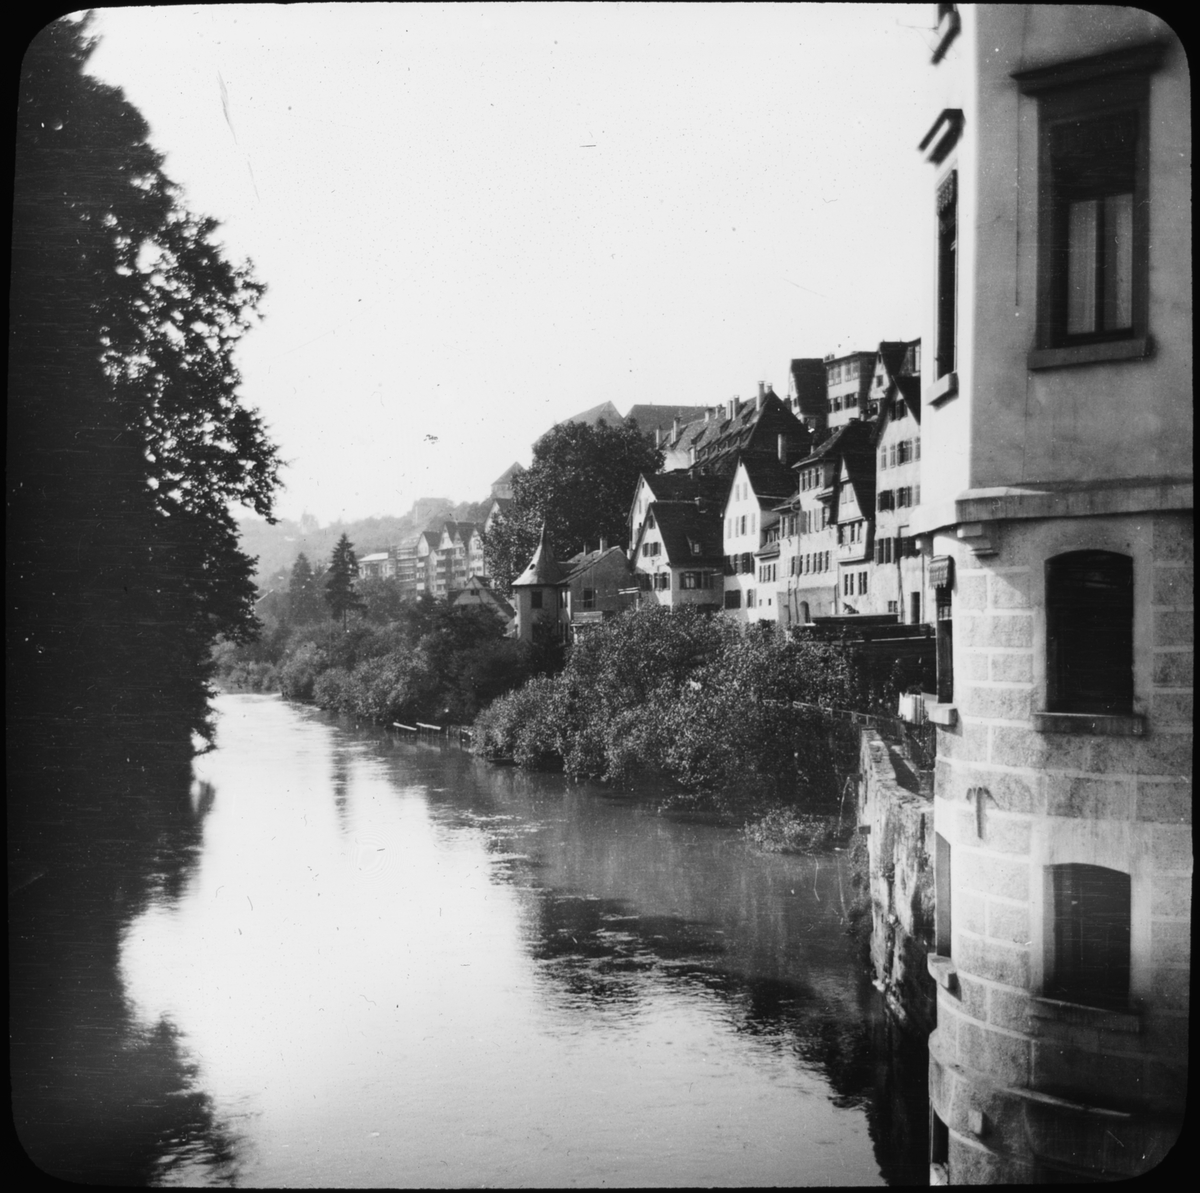 Skioptikonbild med motiv av Tübingen vid floden Neckar.
Bilden har förvarats i kartong märkt: Resan 1908. Tübingen 3. Horb.